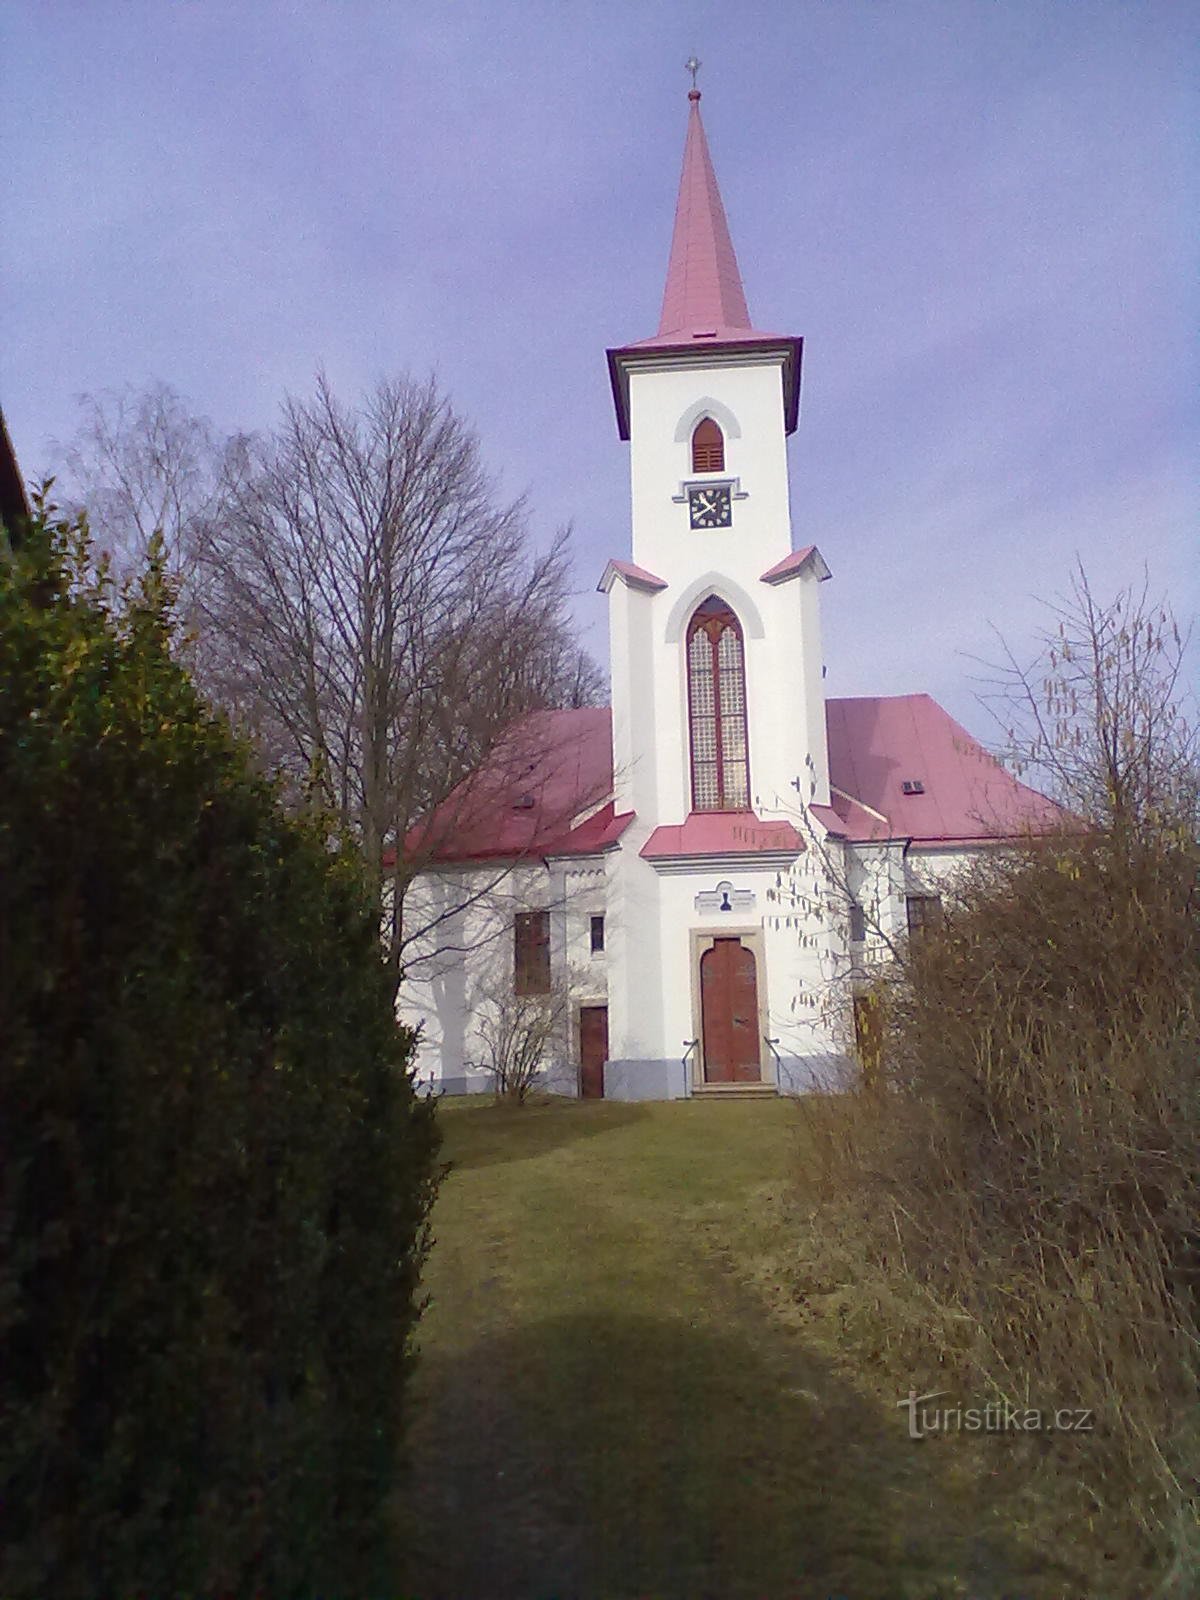 2. Евангелическая церковь в Моравче 1785 года.